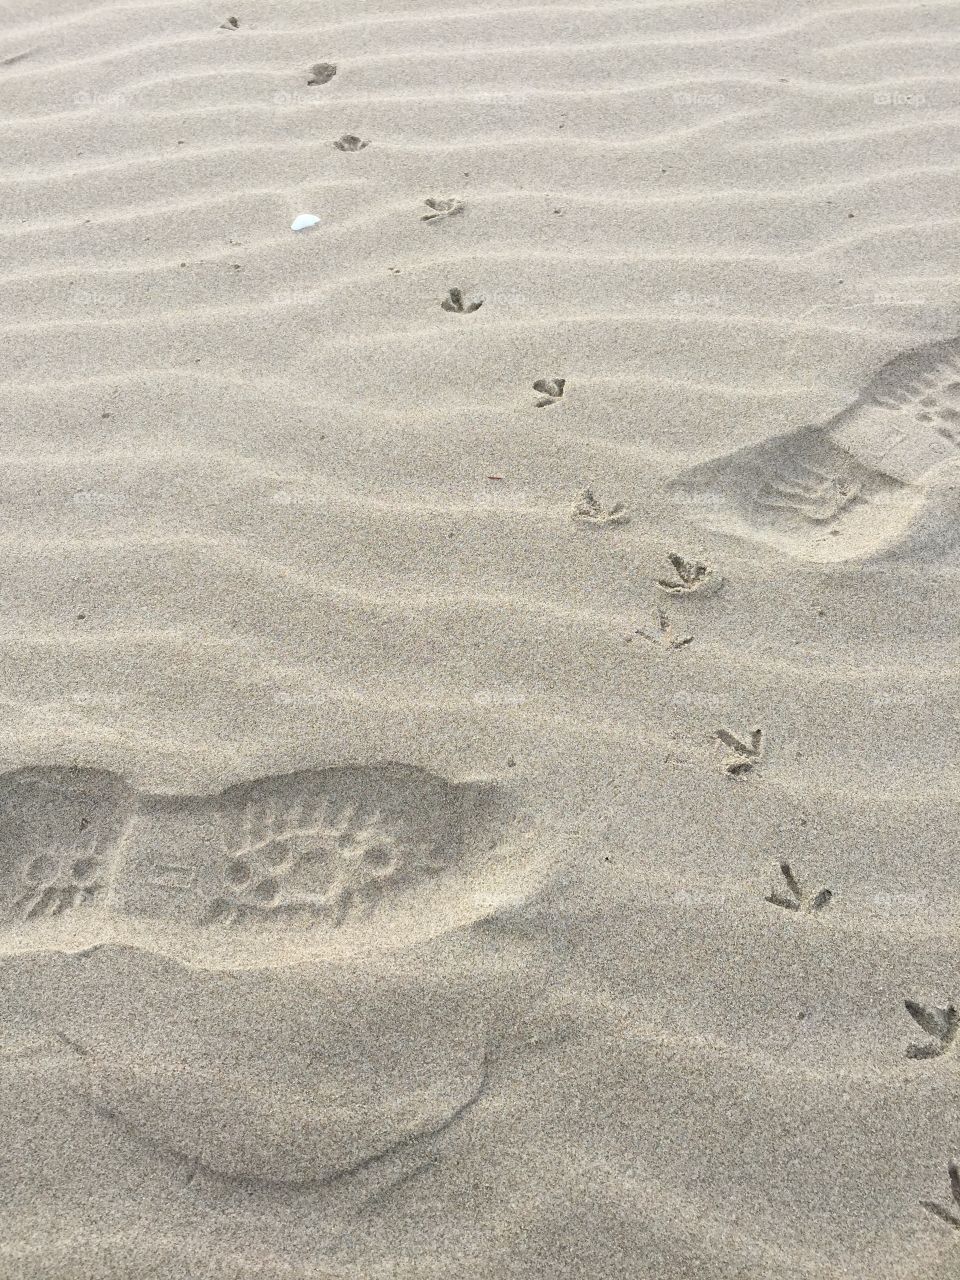 Footprint, Sand, Beach, Footstep, Sandy